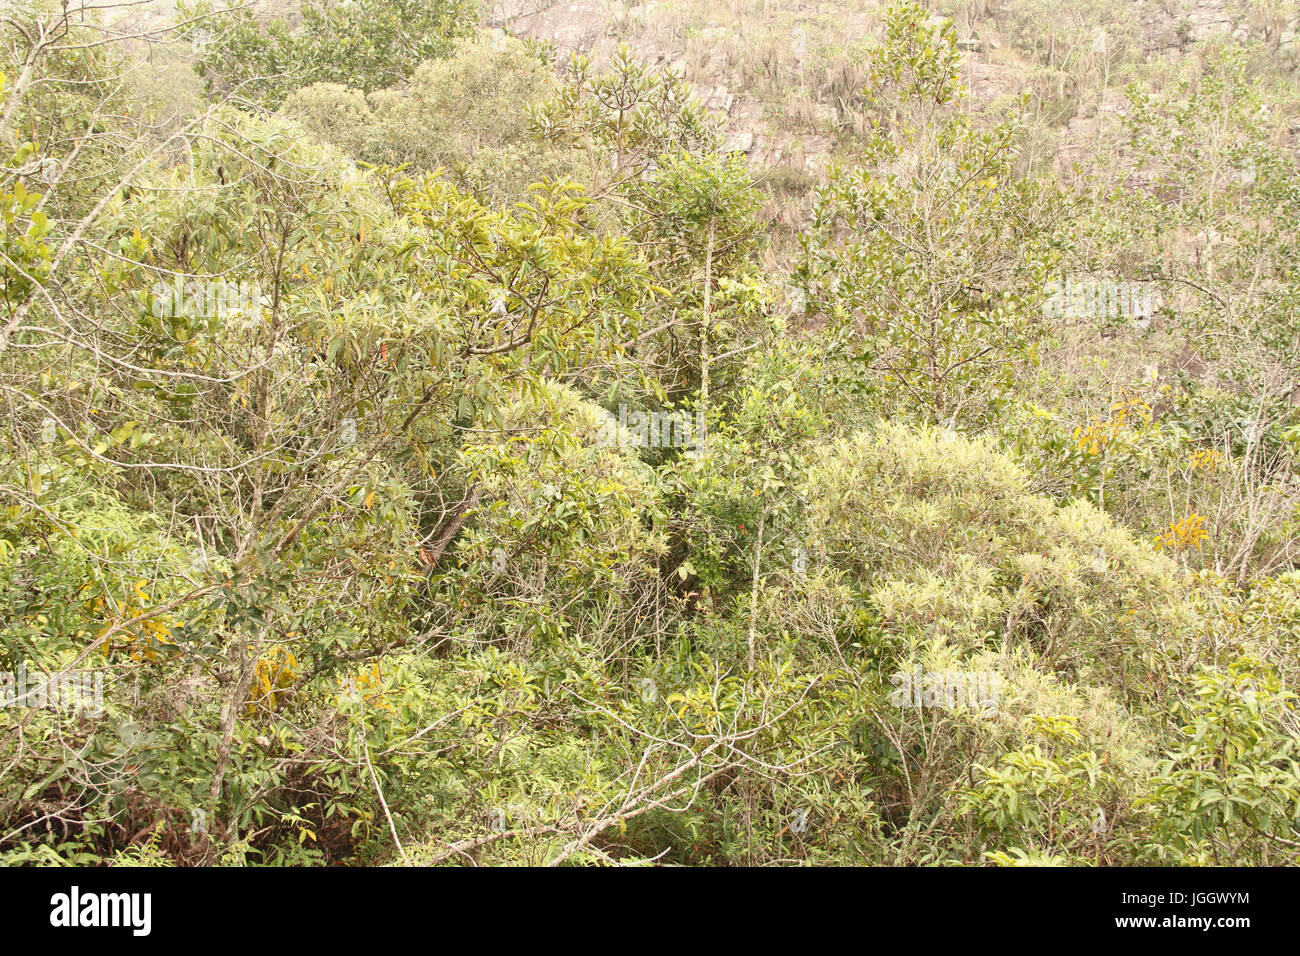 Vegetation, slope, 2016, Park Ecológico Quedas do Rio Bonito, Lavras, Minas Gerais, Brazil. Stock Photo